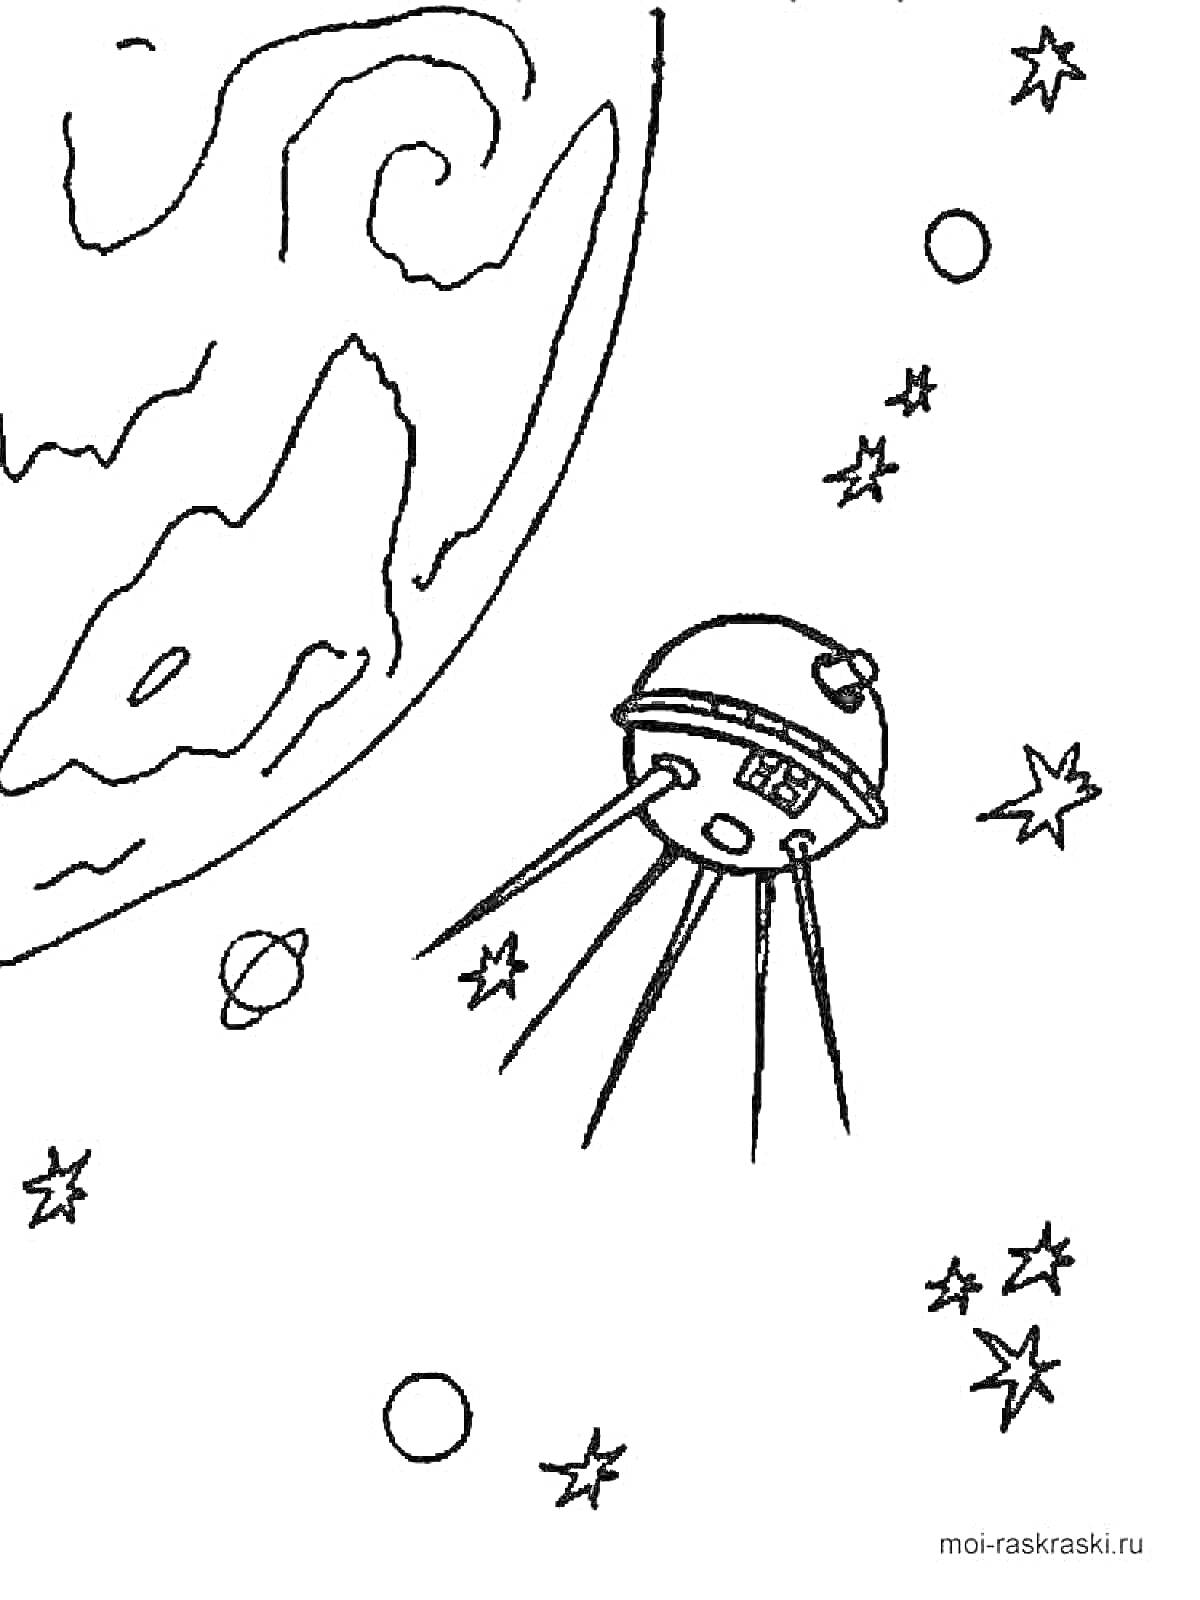 Раскраска Космический спутник на орбите, вокруг планеты с кратерами, в окружении звезд и планет